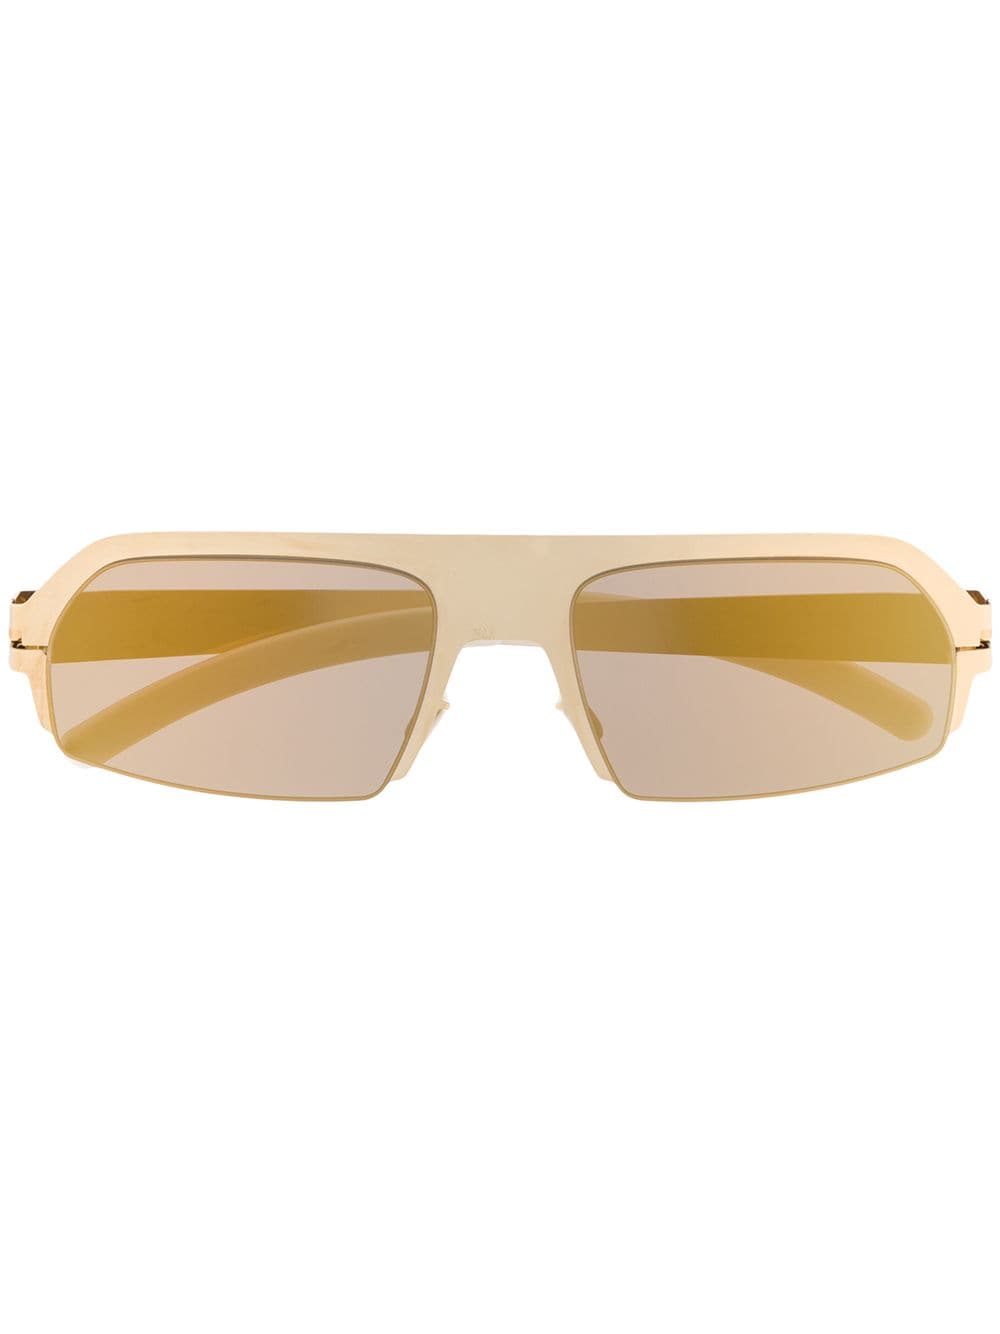 Mykita oversized sunglasses - Gold von Mykita